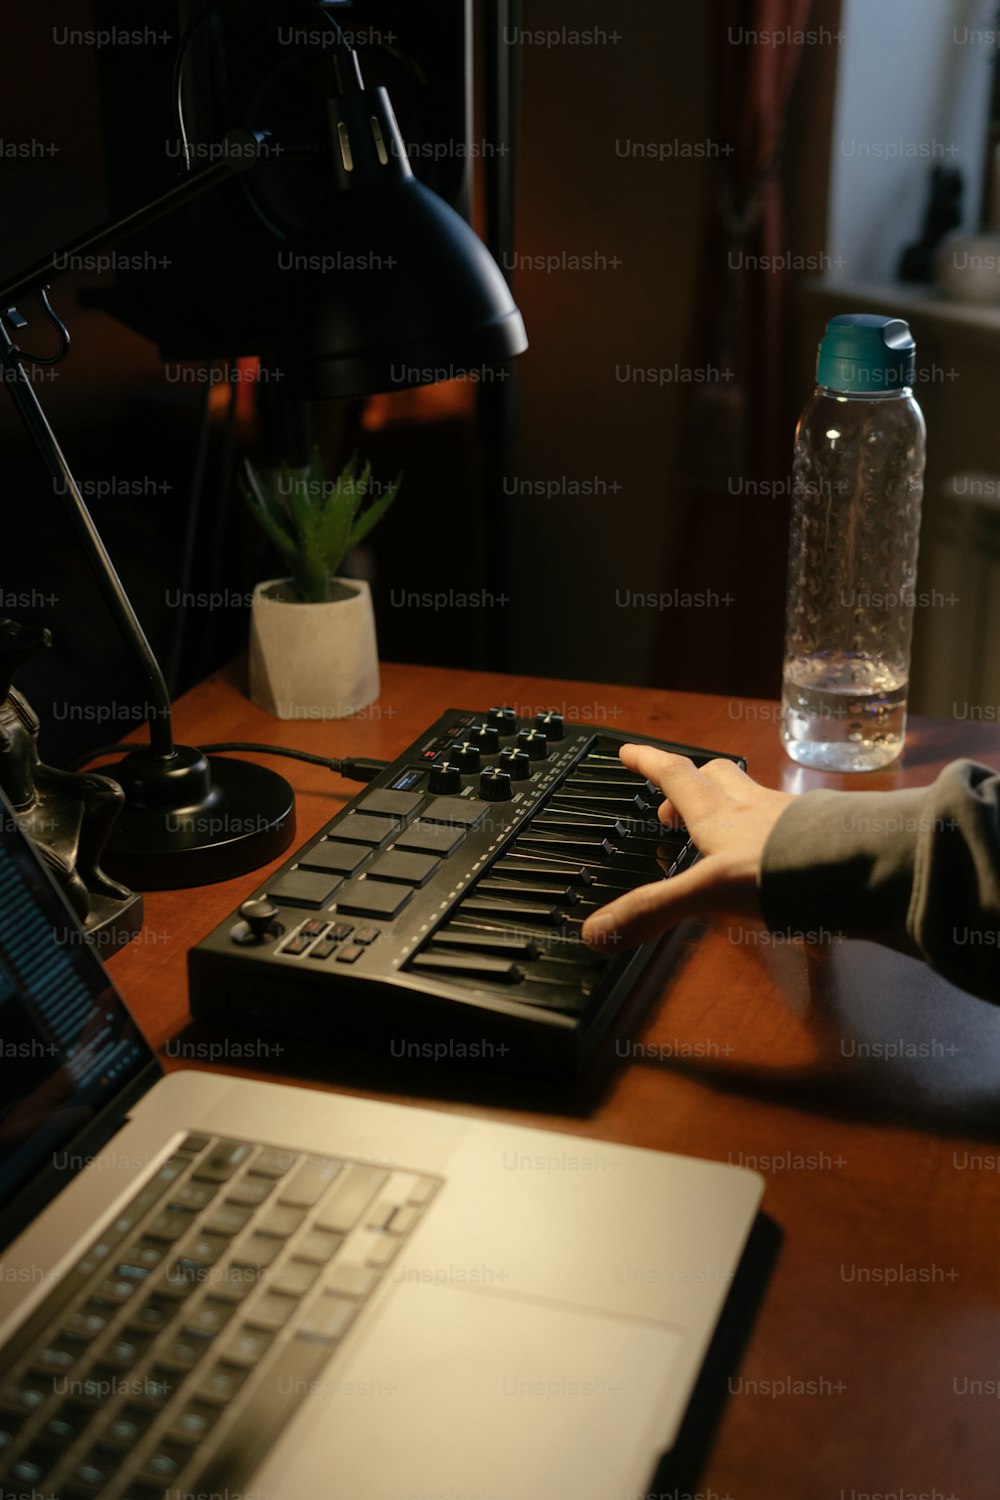 ラップトップの横にあるキーボードで入力している人